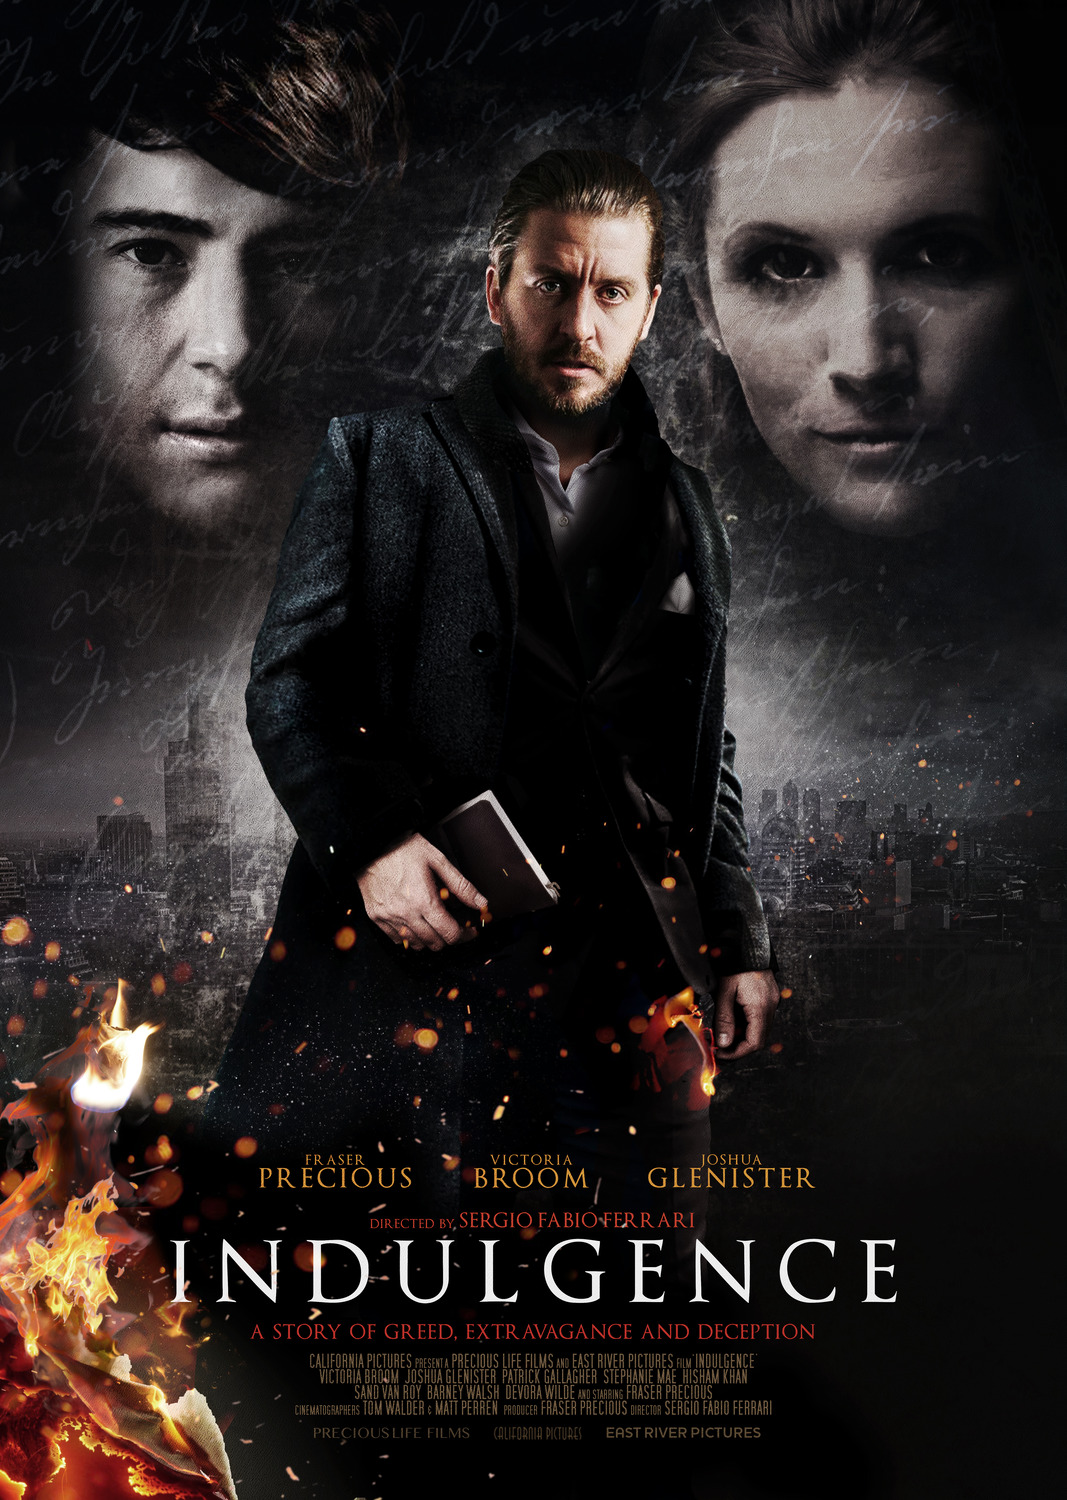 Extra Large Movie Poster Image for Indulgence 